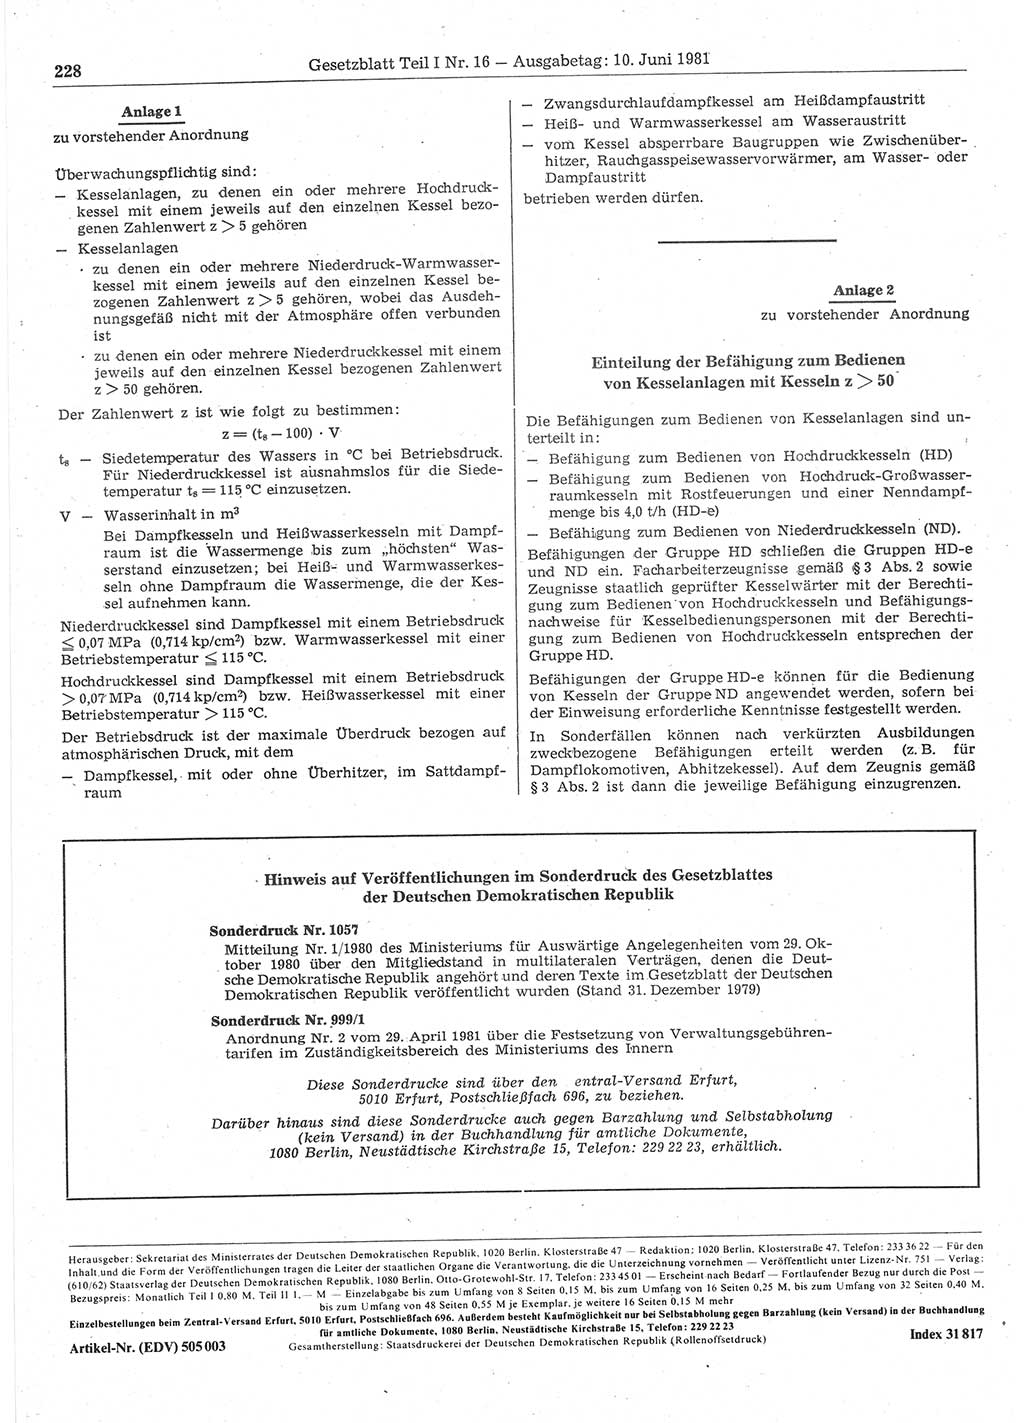 Gesetzblatt (GBl.) der Deutschen Demokratischen Republik (DDR) Teil Ⅰ 1981, Seite 228 (GBl. DDR Ⅰ 1981, S. 228)